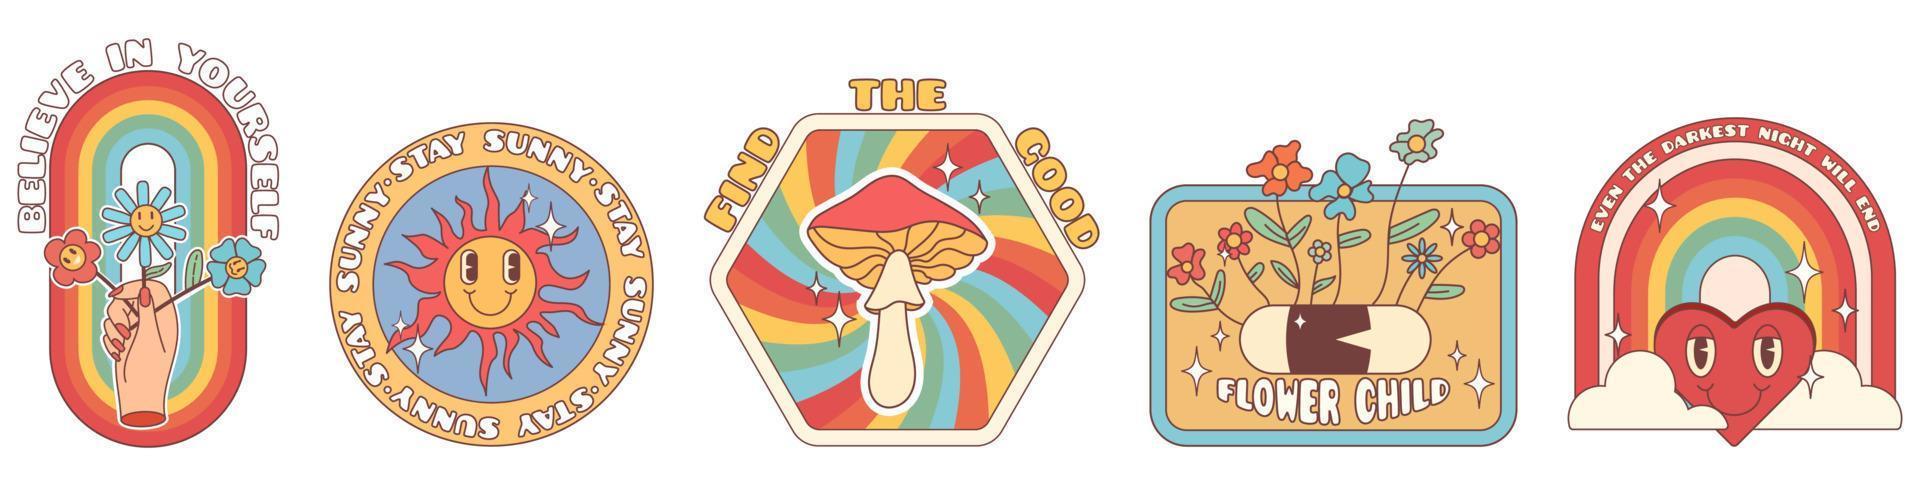 maravillosas pegatinas hippie de los años 70. flor de dibujos animados divertidos, arco iris, corazón, margarita, hongo, etc. paquete de pegatinas en estilo de dibujos animados psicodélicos retro de moda. vector